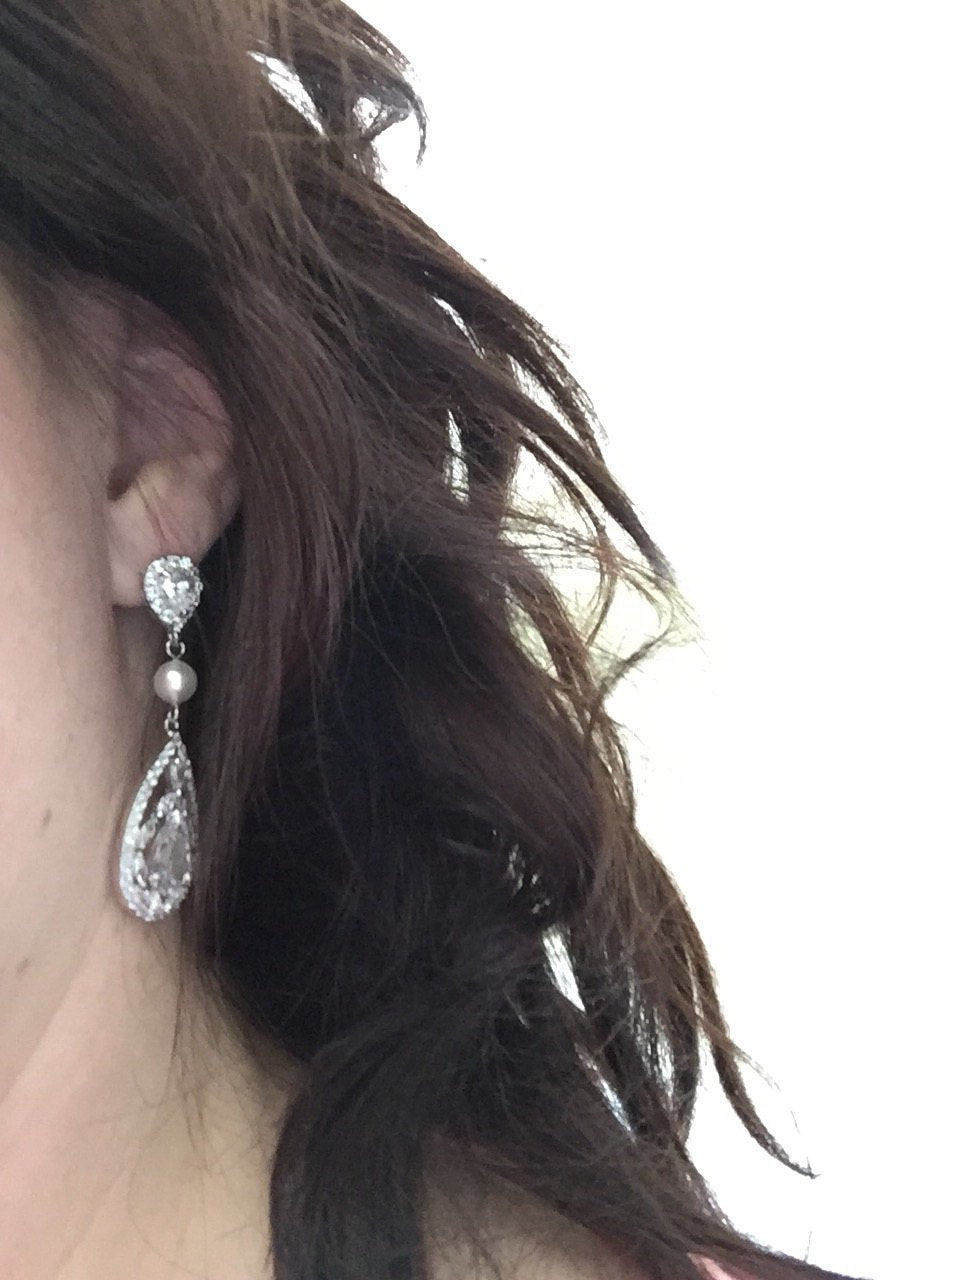 Teardrop earrings for weddings